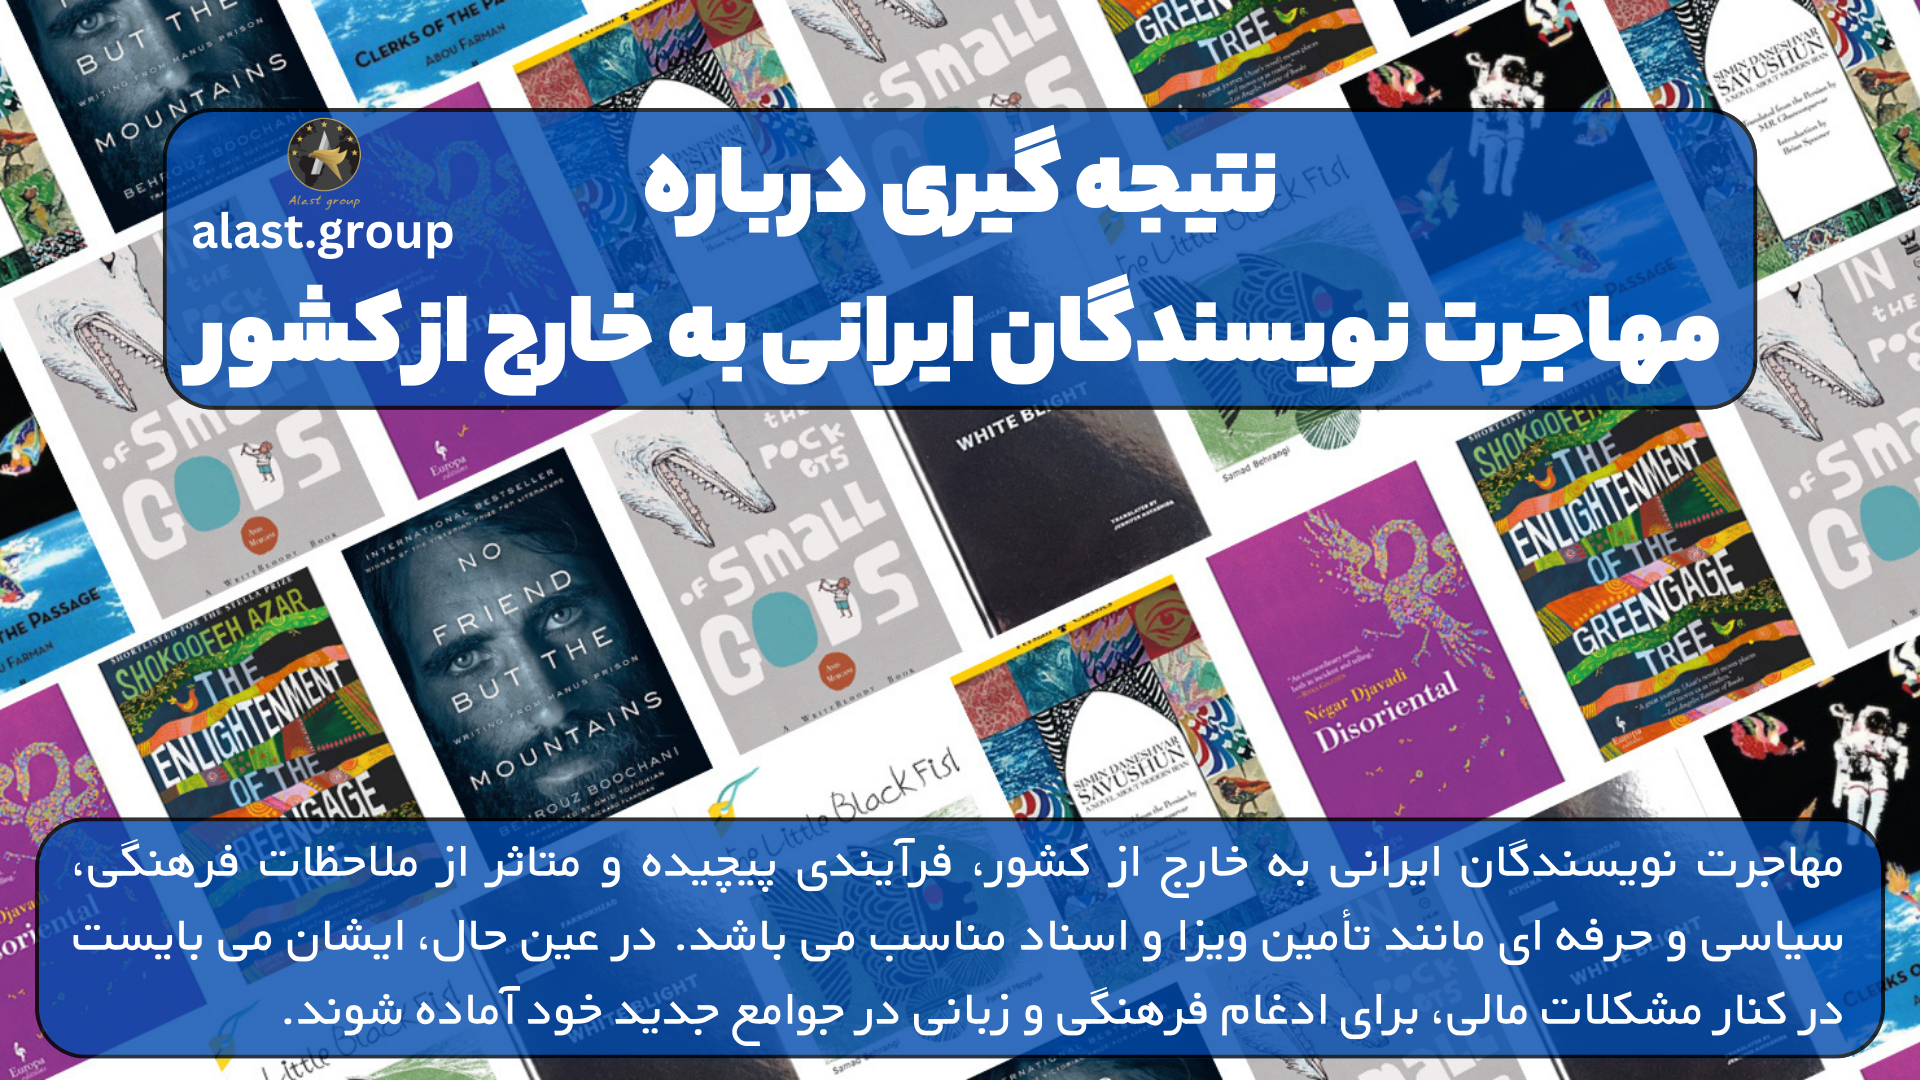 نتیجه گیری درباره مهاجرت نویسندگان ایرانی به خارج از کشور